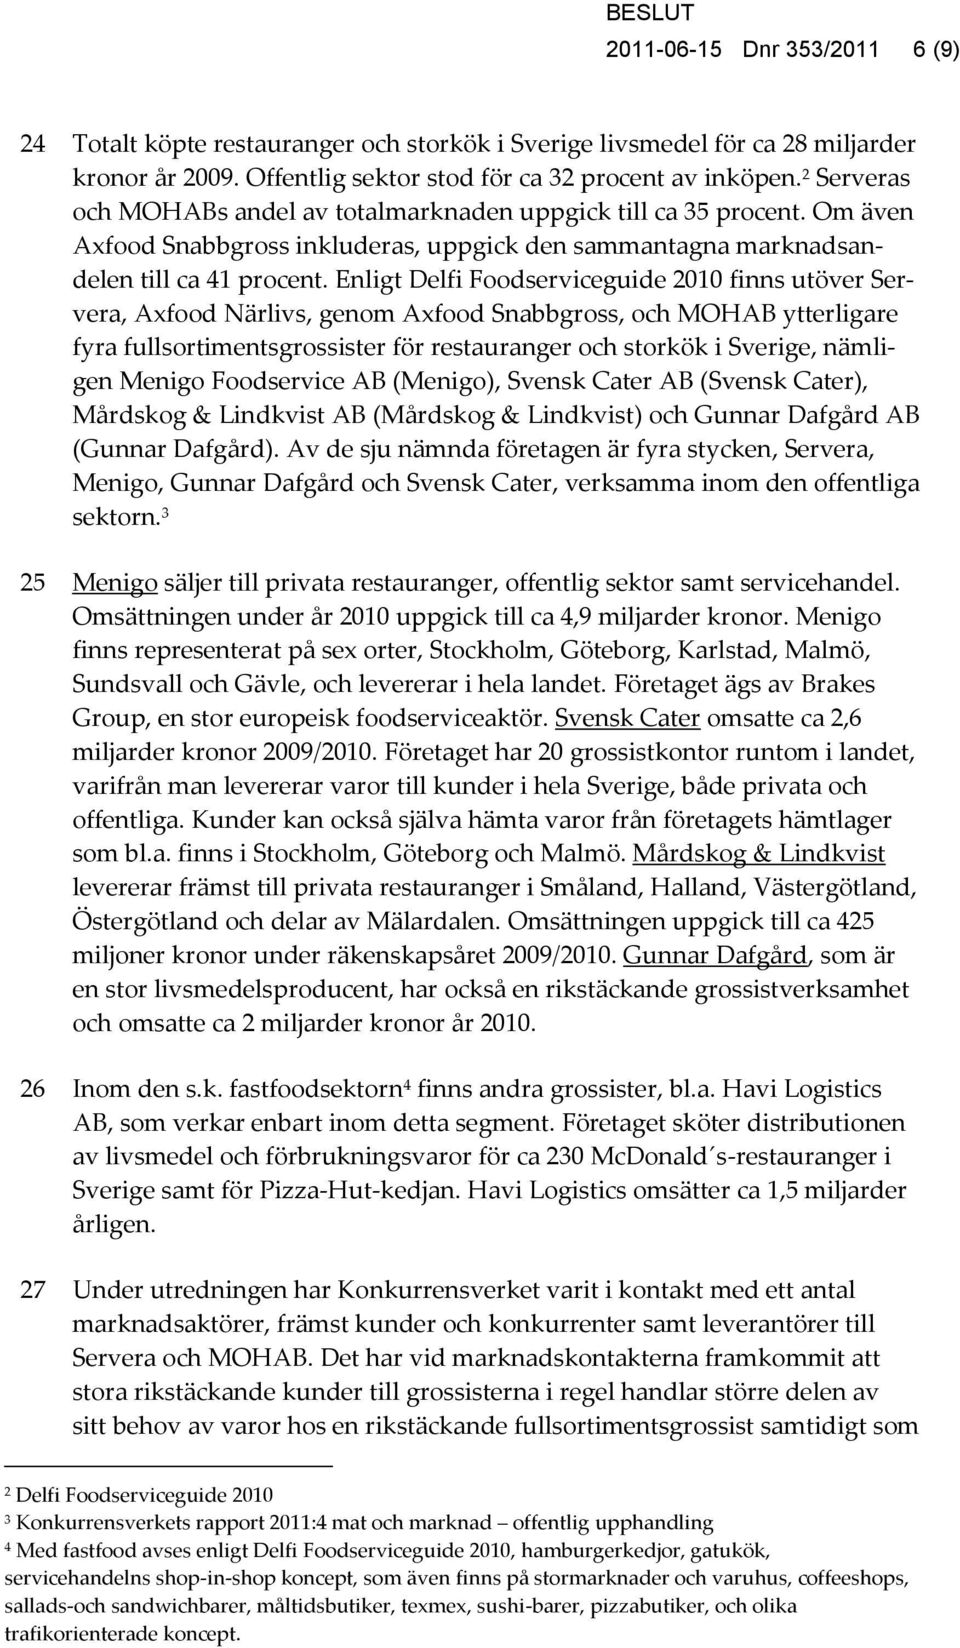 Enligt Delfi Foodserviceguide 2010 finns utöver Servera, Axfood Närlivs, genom Axfood Snabbgross, och MOHAB ytterligare fyra fullsortimentsgrossister för restauranger och storkök i Sverige, nämligen